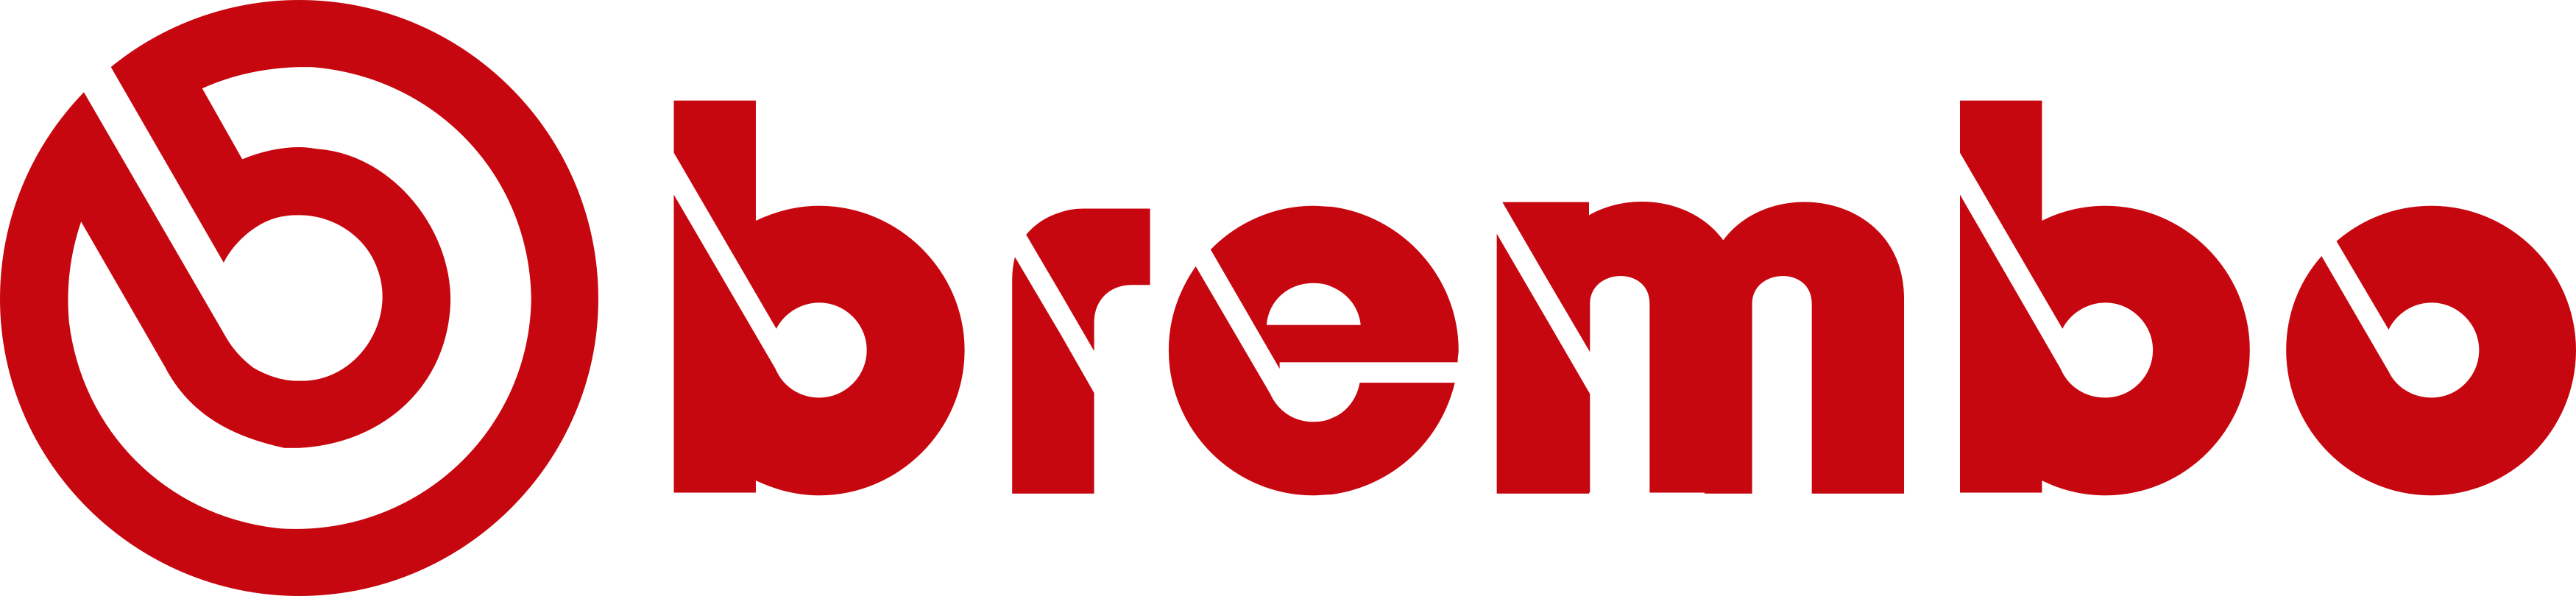 brembo logo - Brembo Logo